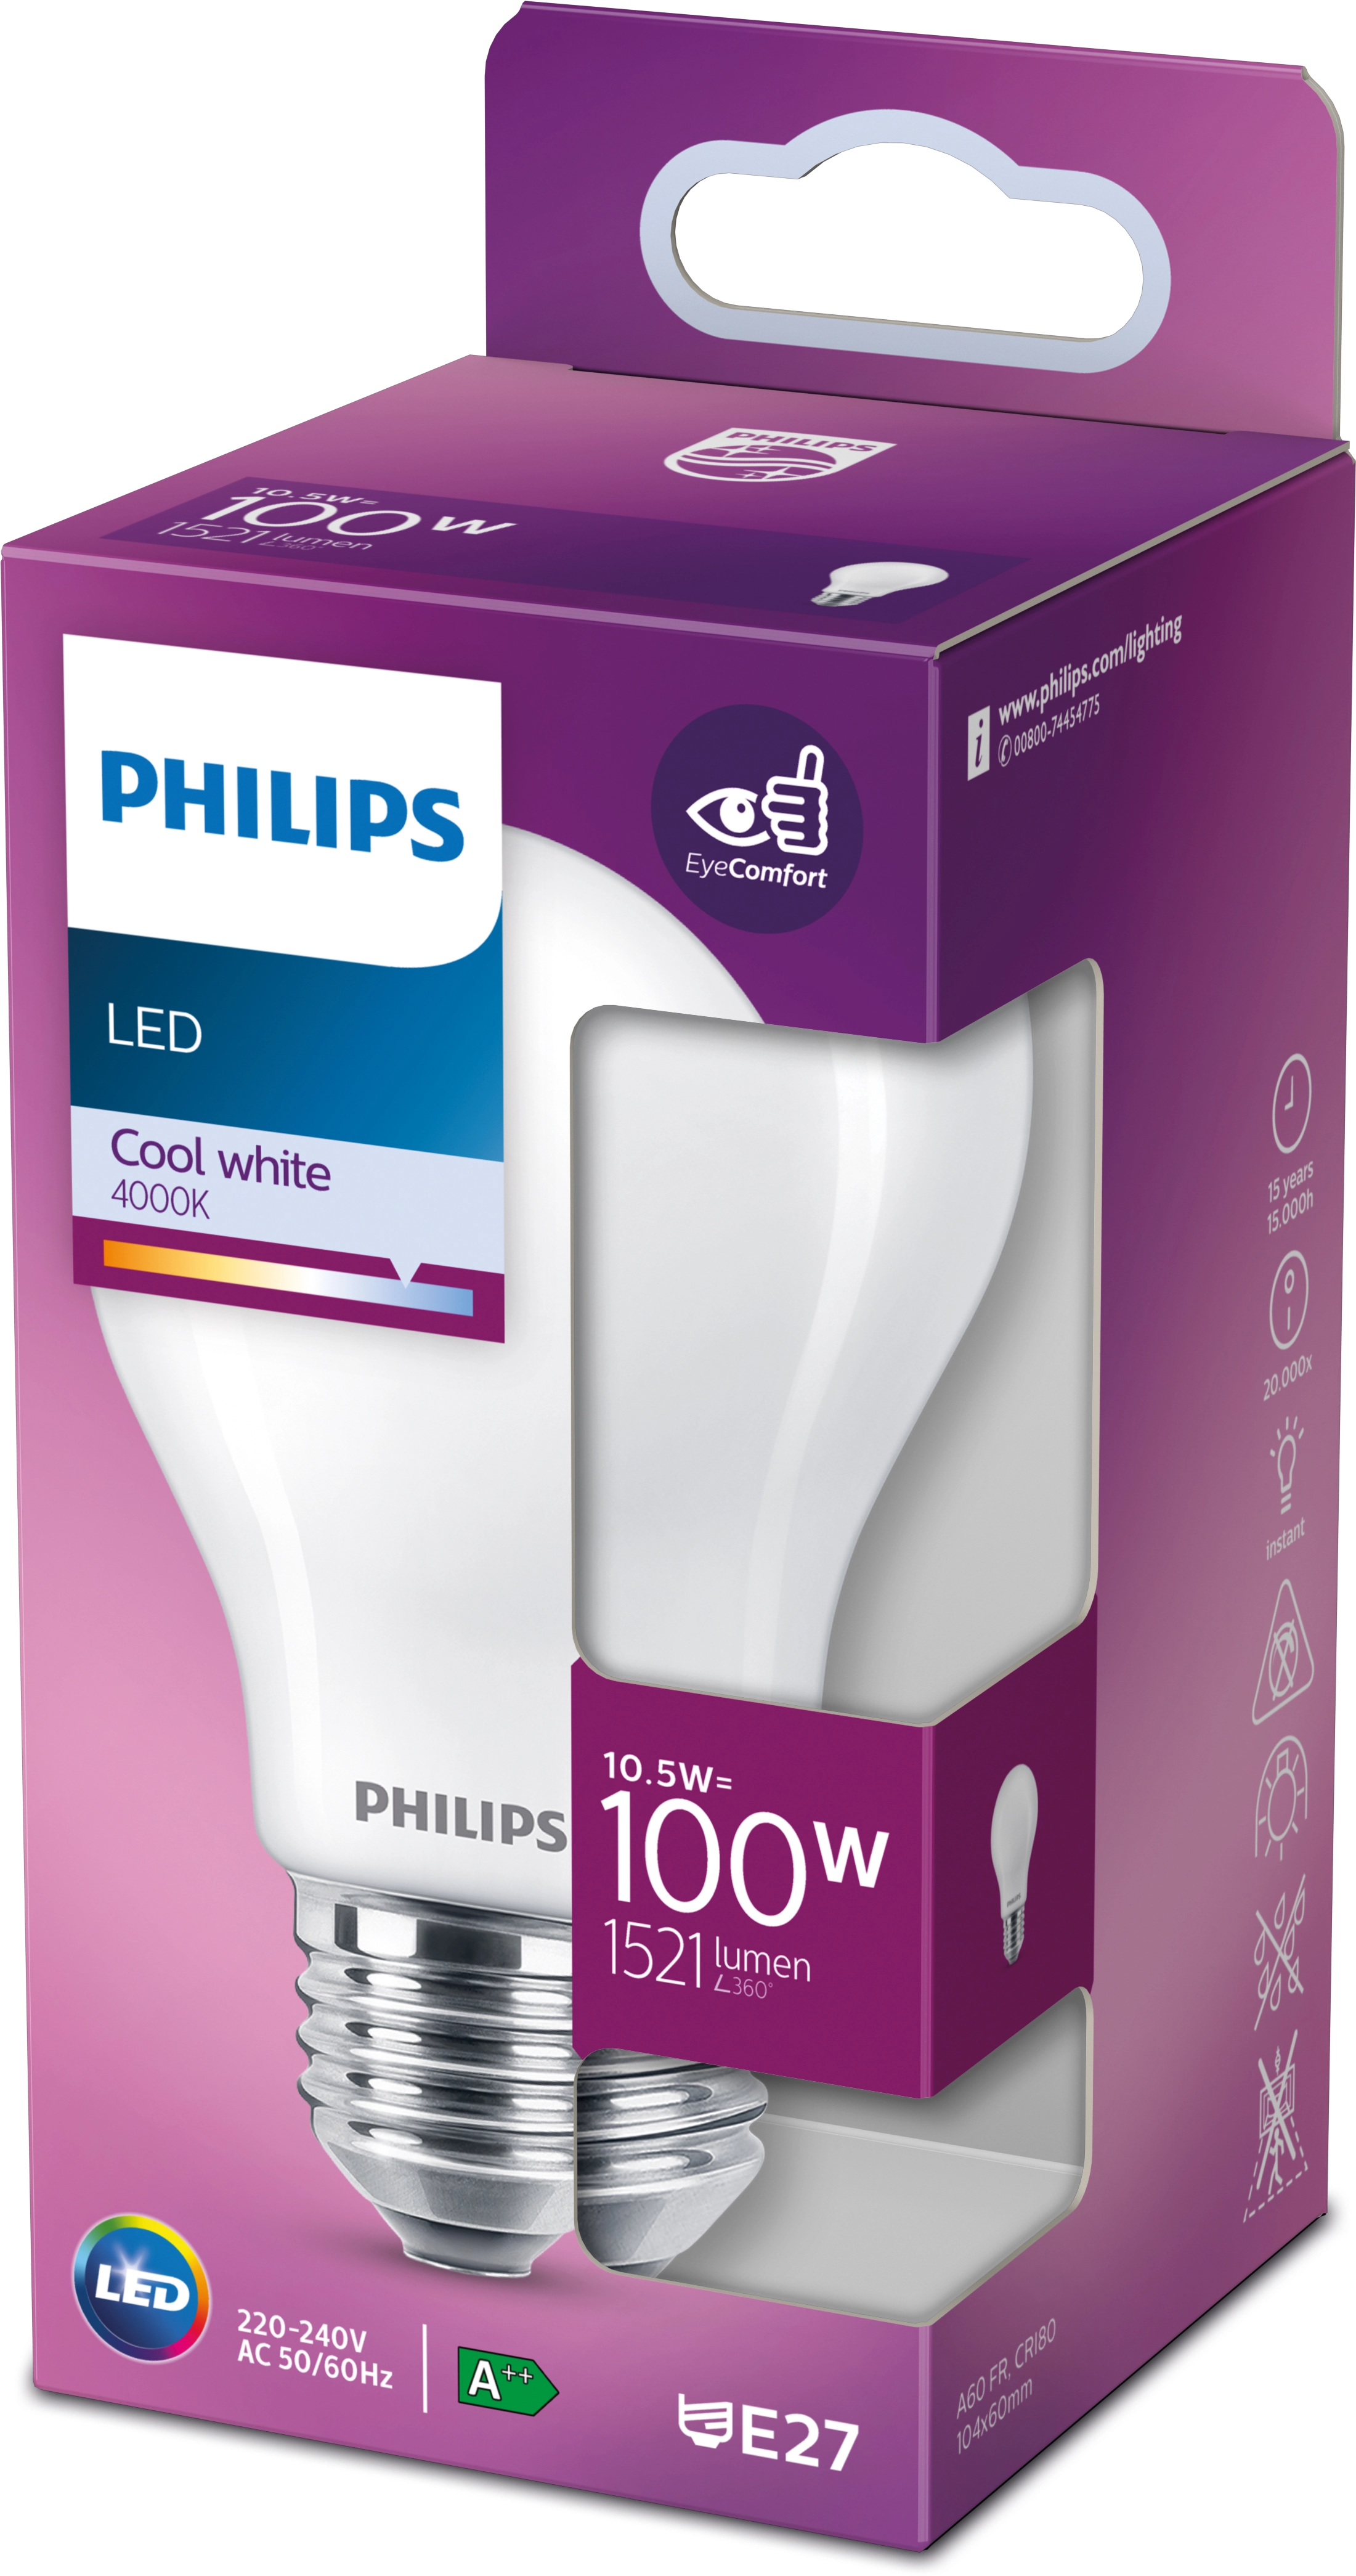 Bellalux Lampadina LED classica filamento E27 Bianco freddo 100 W / 1'521 lm